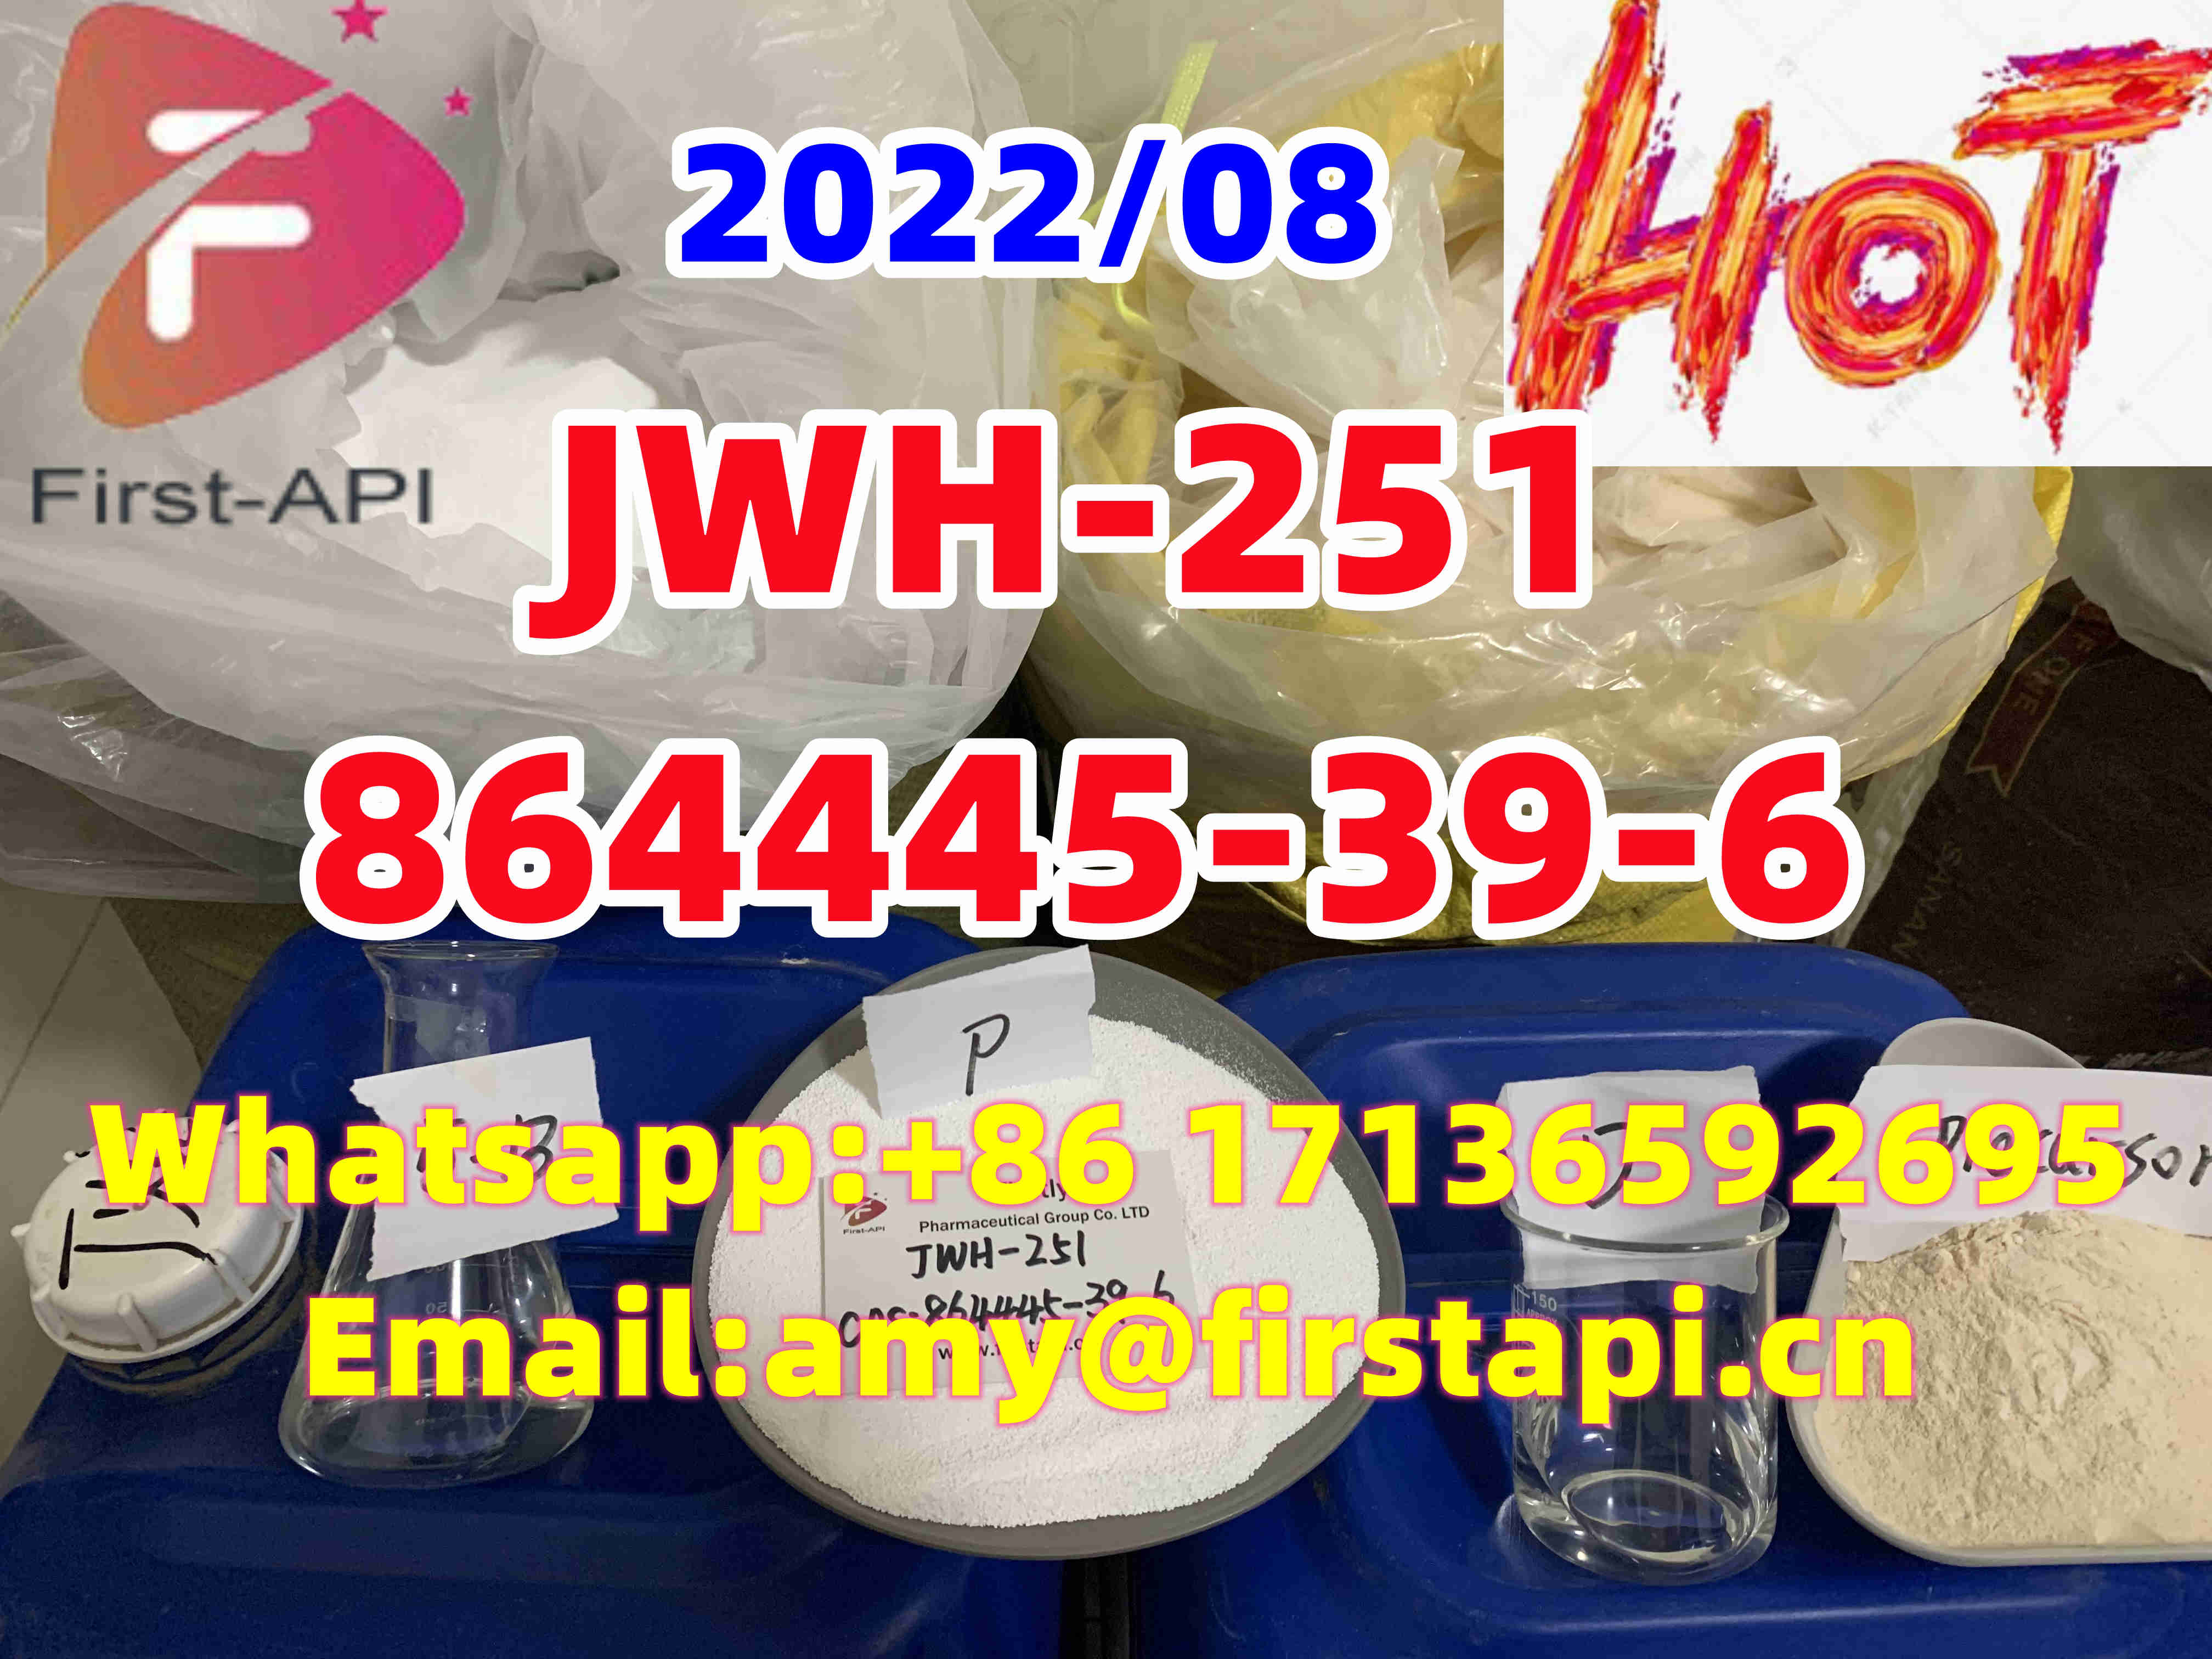 JWH-251,ADB-BUTINACA,5cladb,864445-39-6,high quality,low price - photo